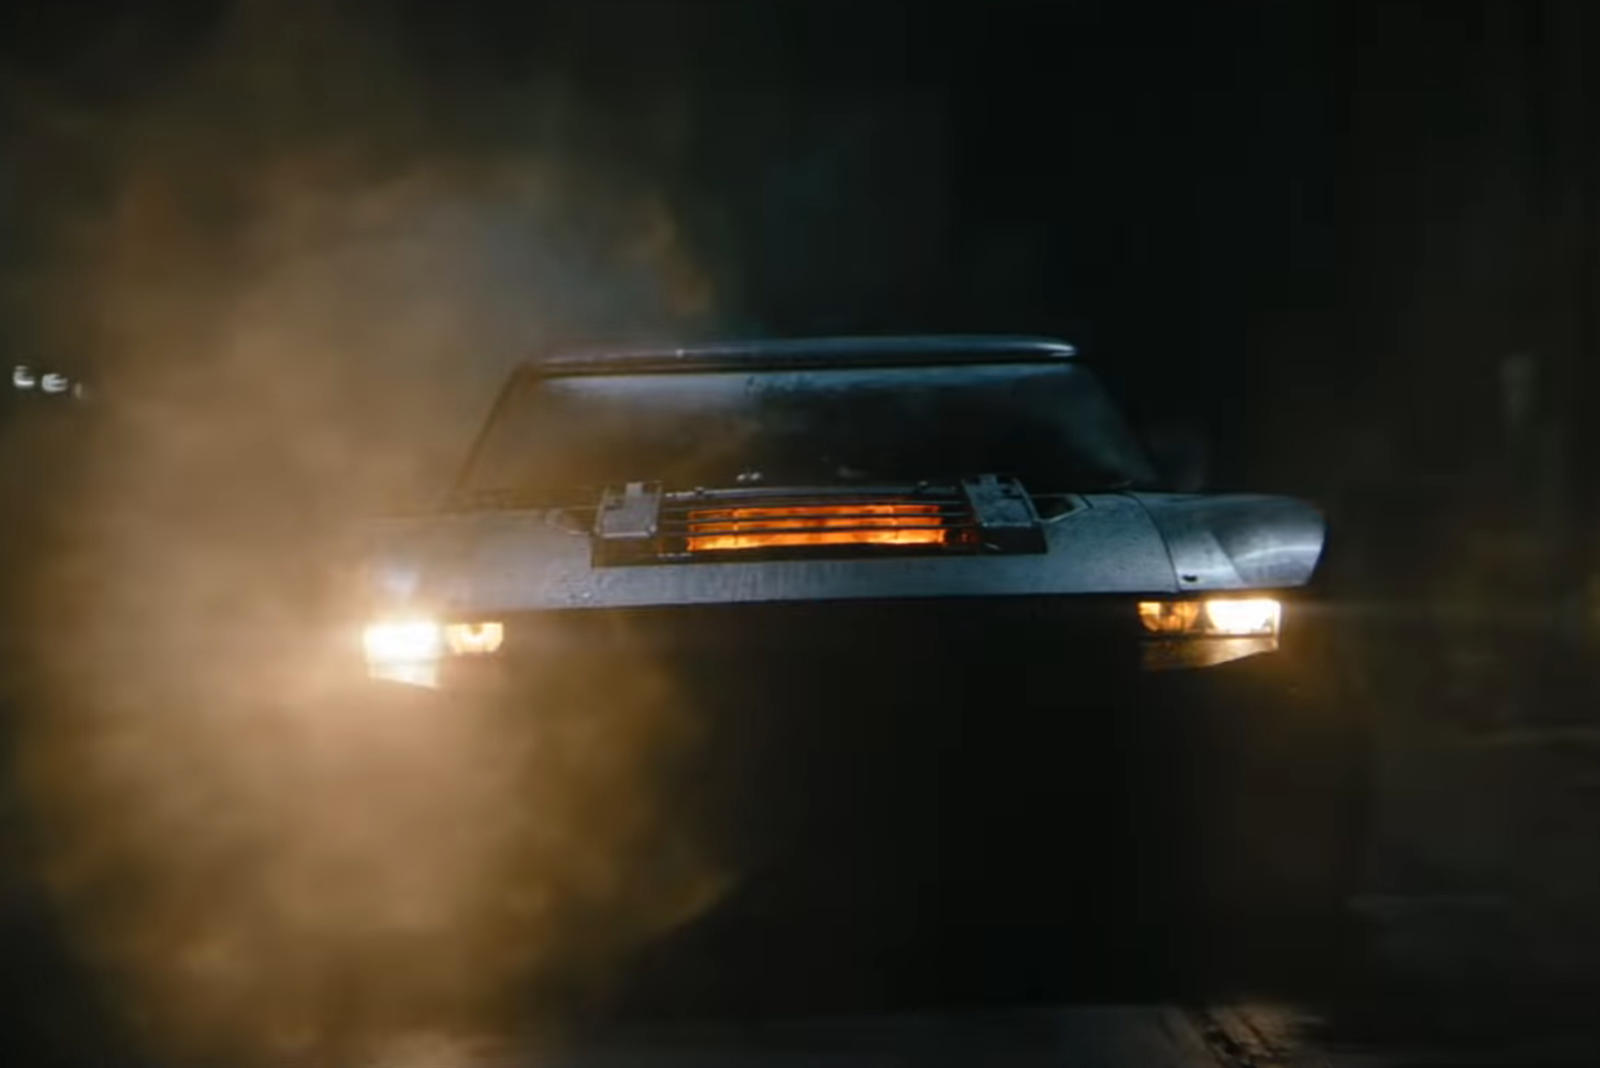 سيارة باتموبيل الجديدة تظهر في إعلان فيلم باتمان القادم 19